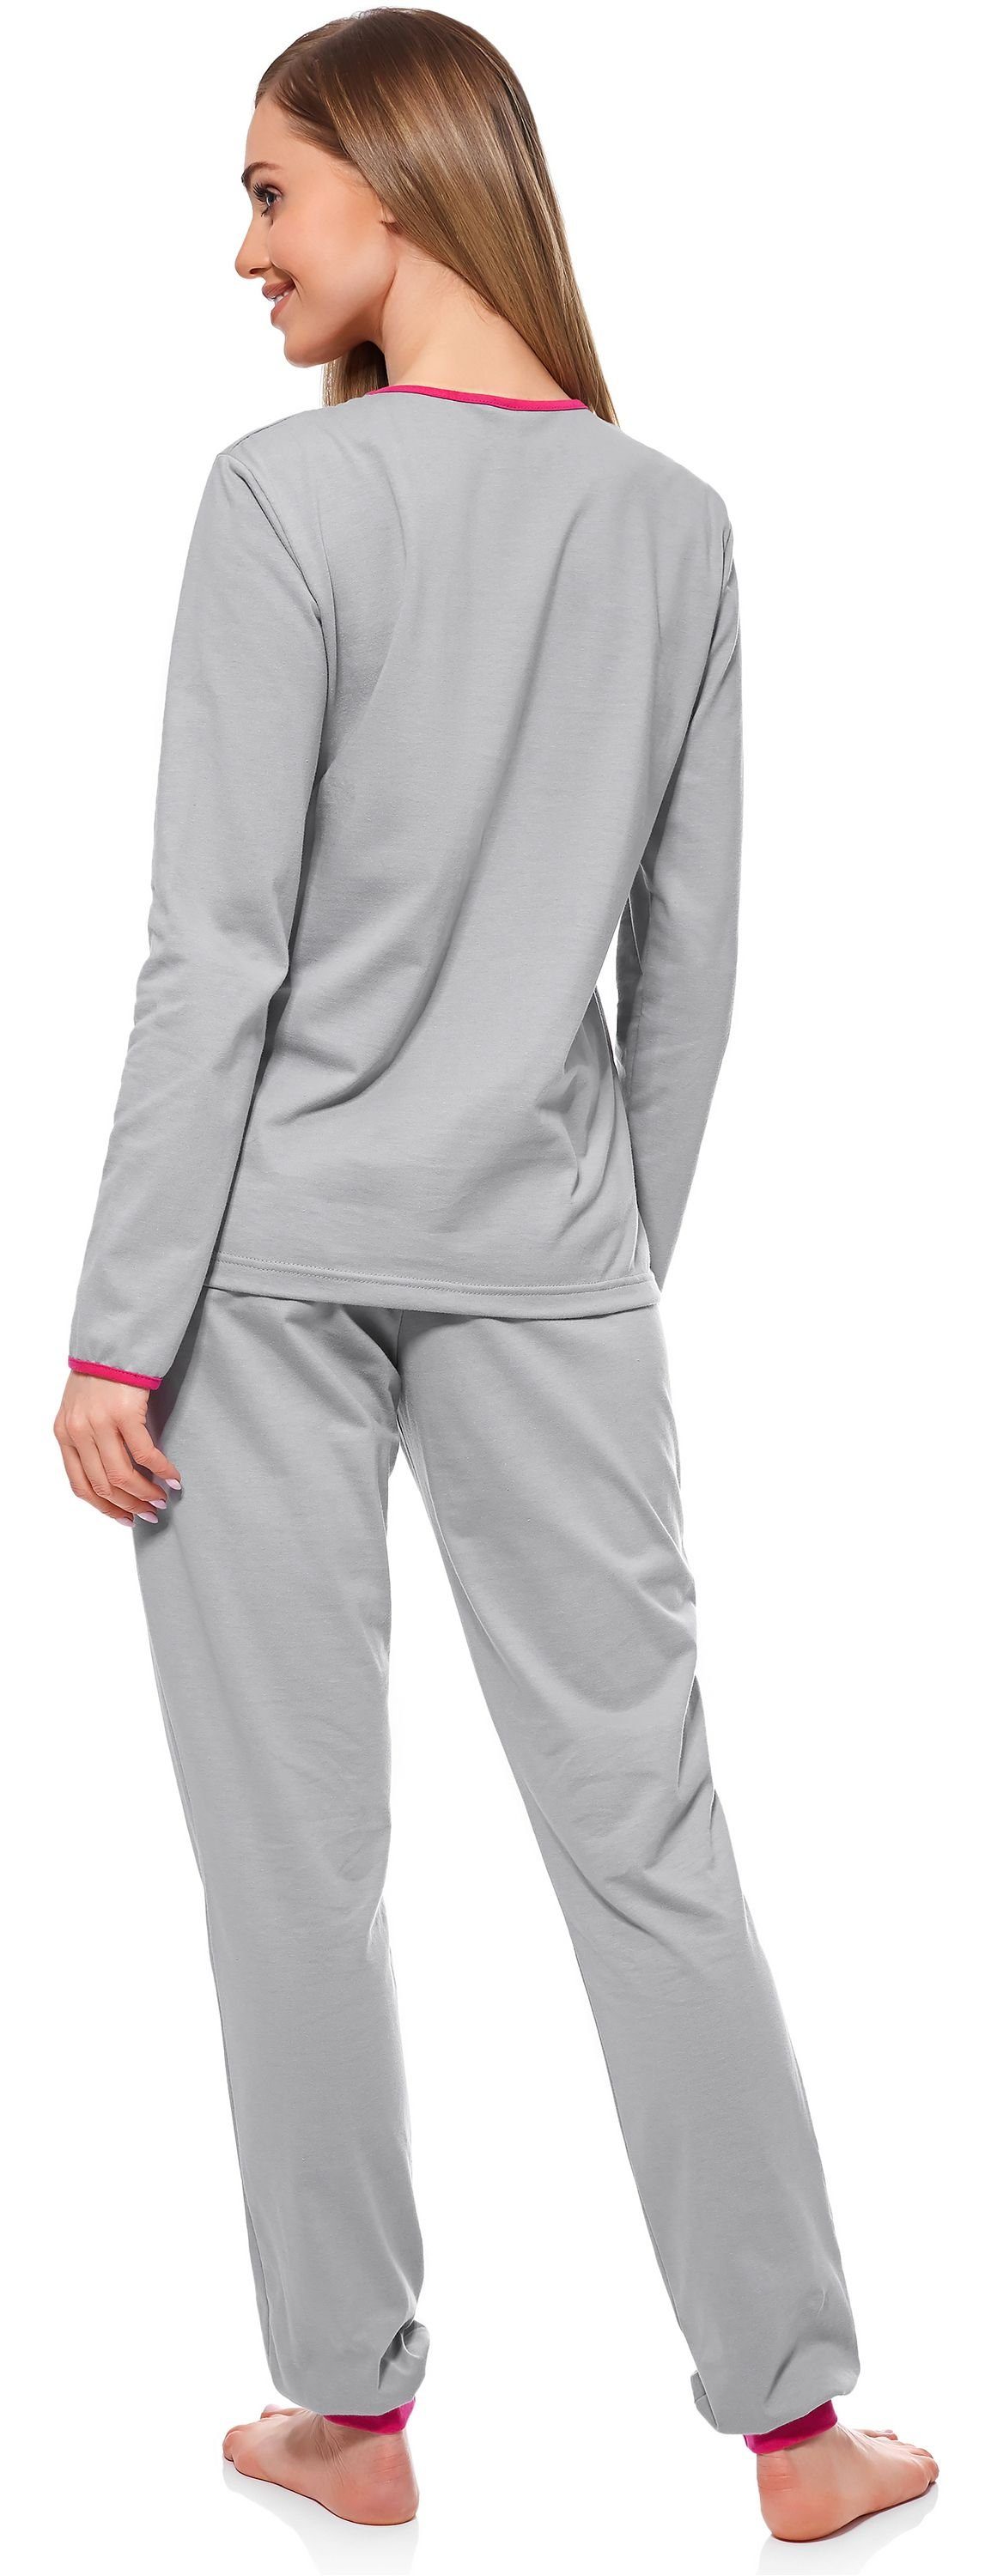 Style MS10-170 Grau-Amaranth Schlafanzug Merry Schlafanzug Damen